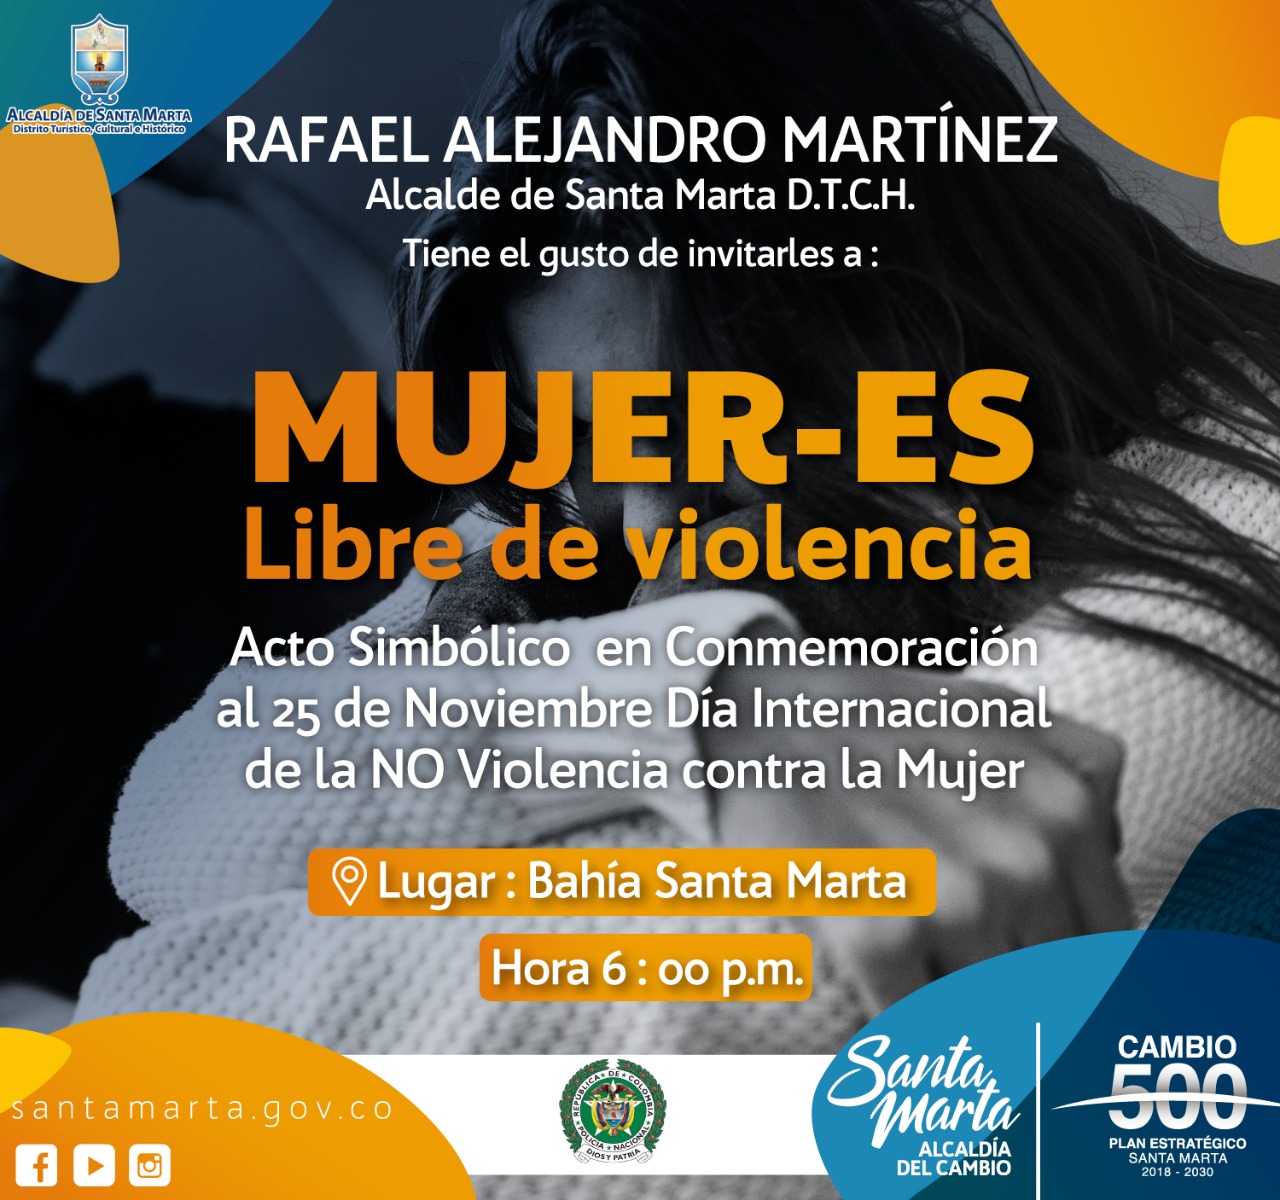 Alcaldía del Cambio invita a un acto simbólico en conmemoración al Día de la NO Violencia contra la Mujer